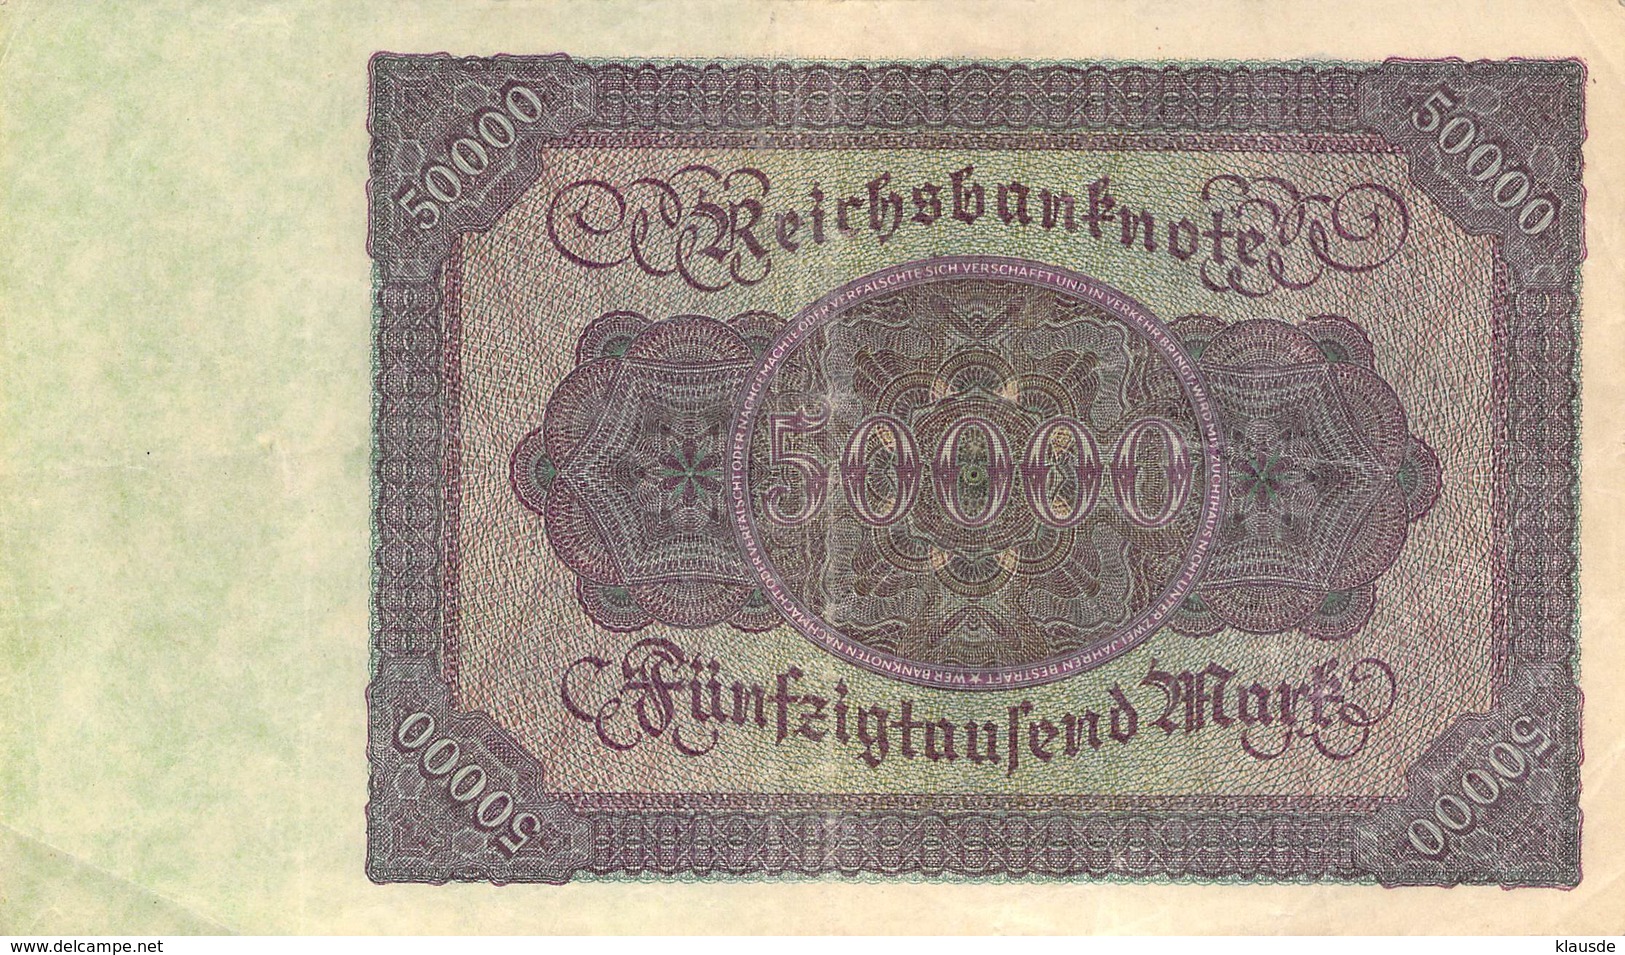 Fünfzigtausend Mark Reichsbanknote VF/F (III) - 50000 Mark